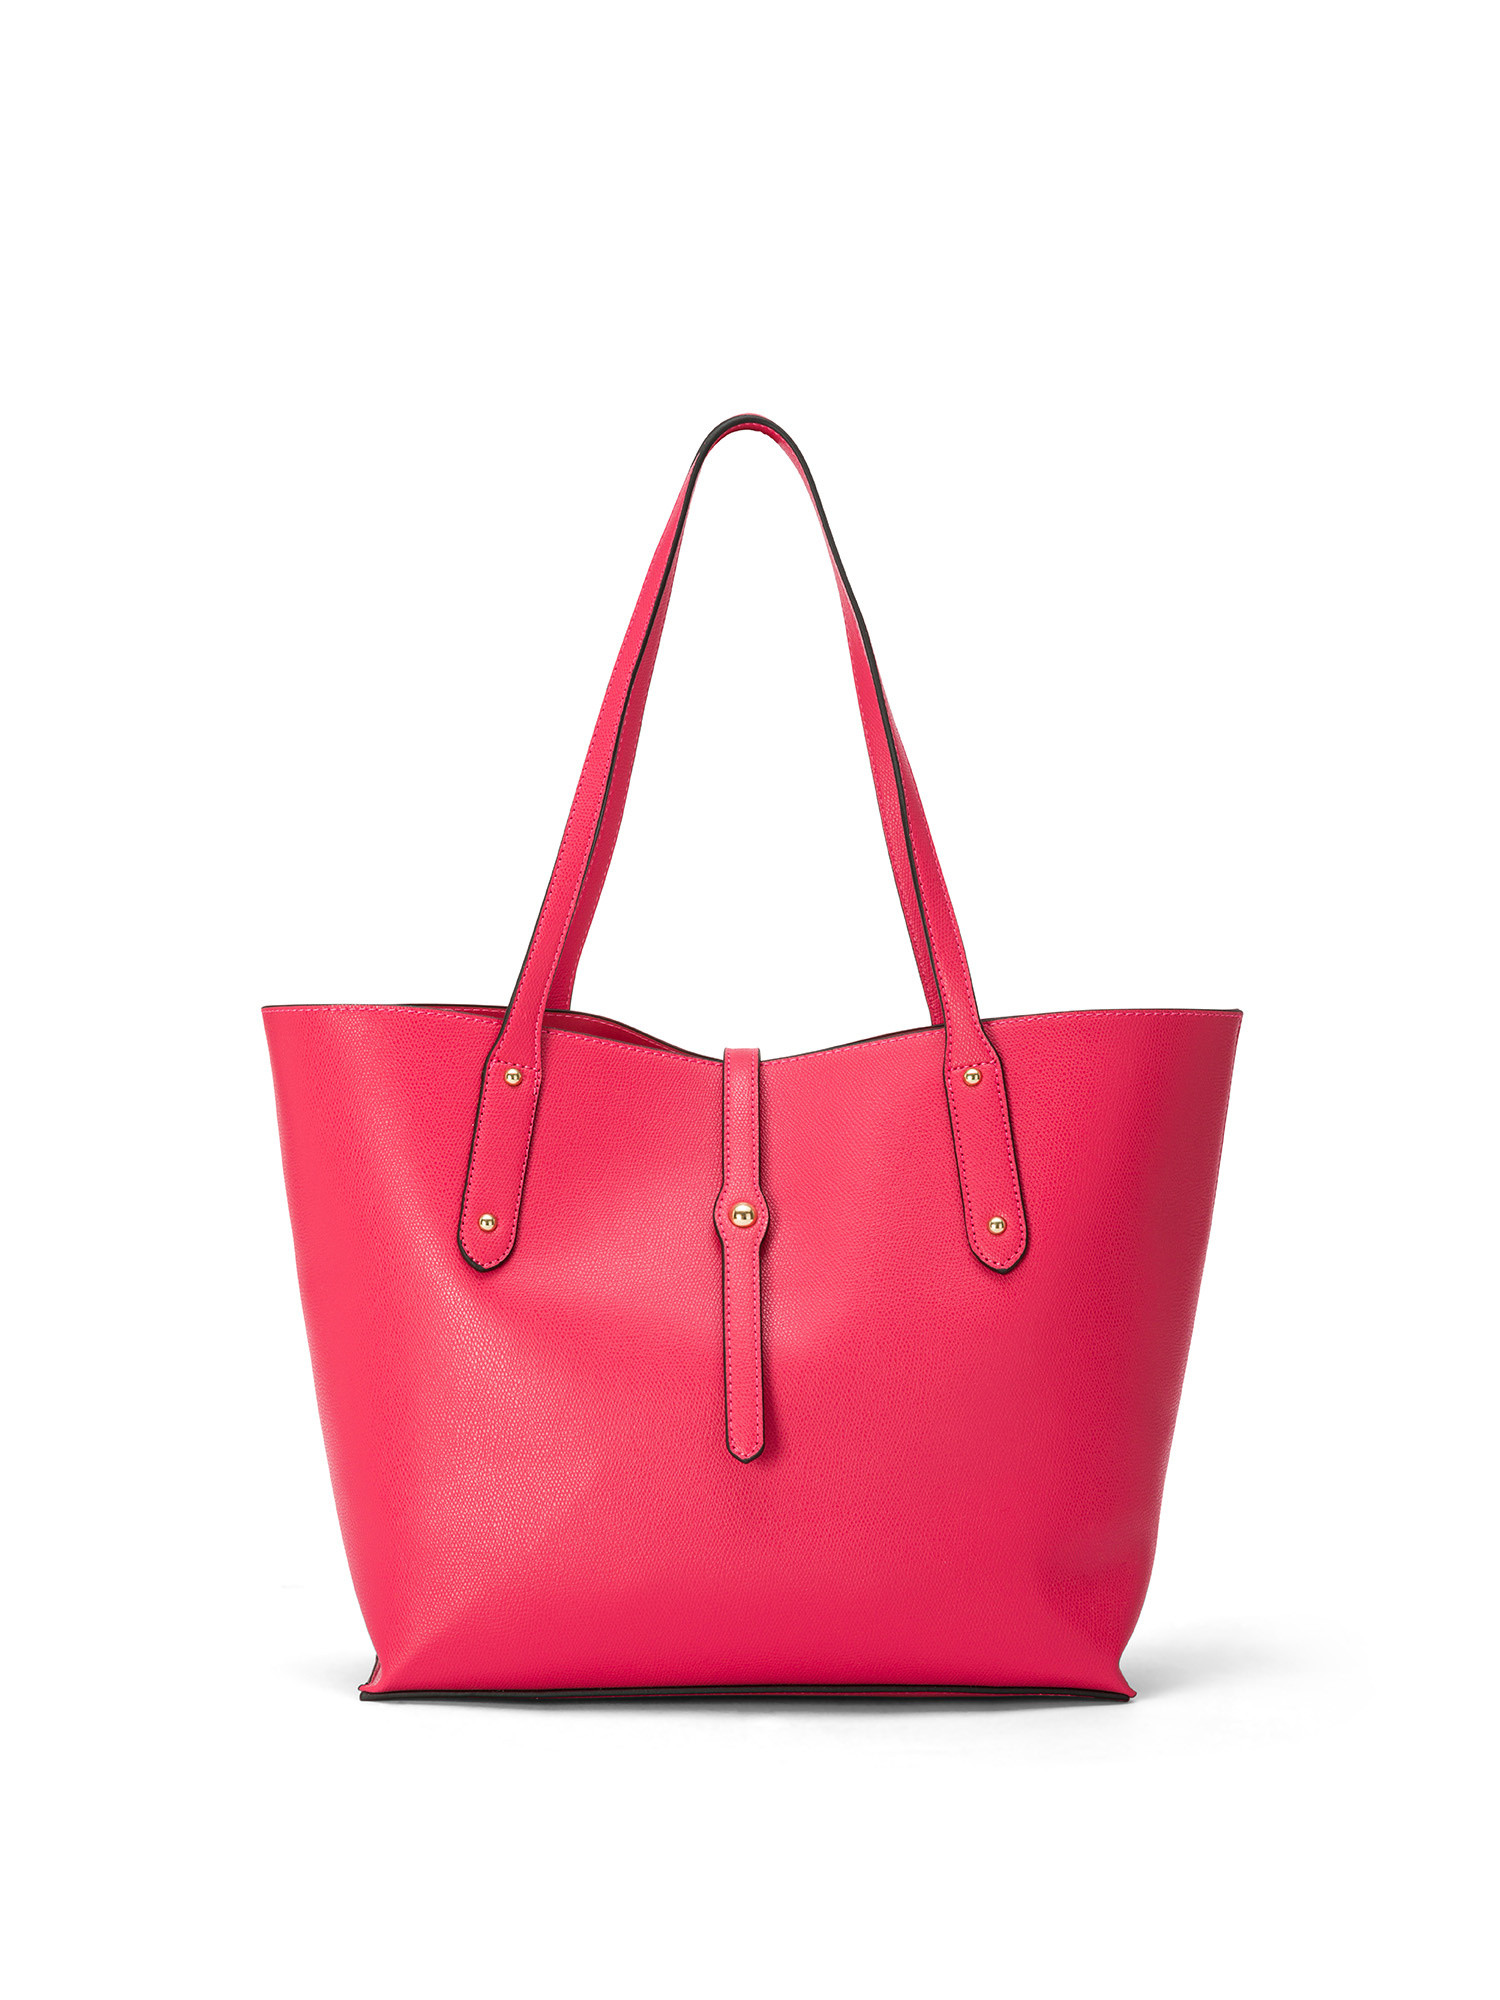 Koan - Shopping bag, Pink Fuchsia, large image number 0